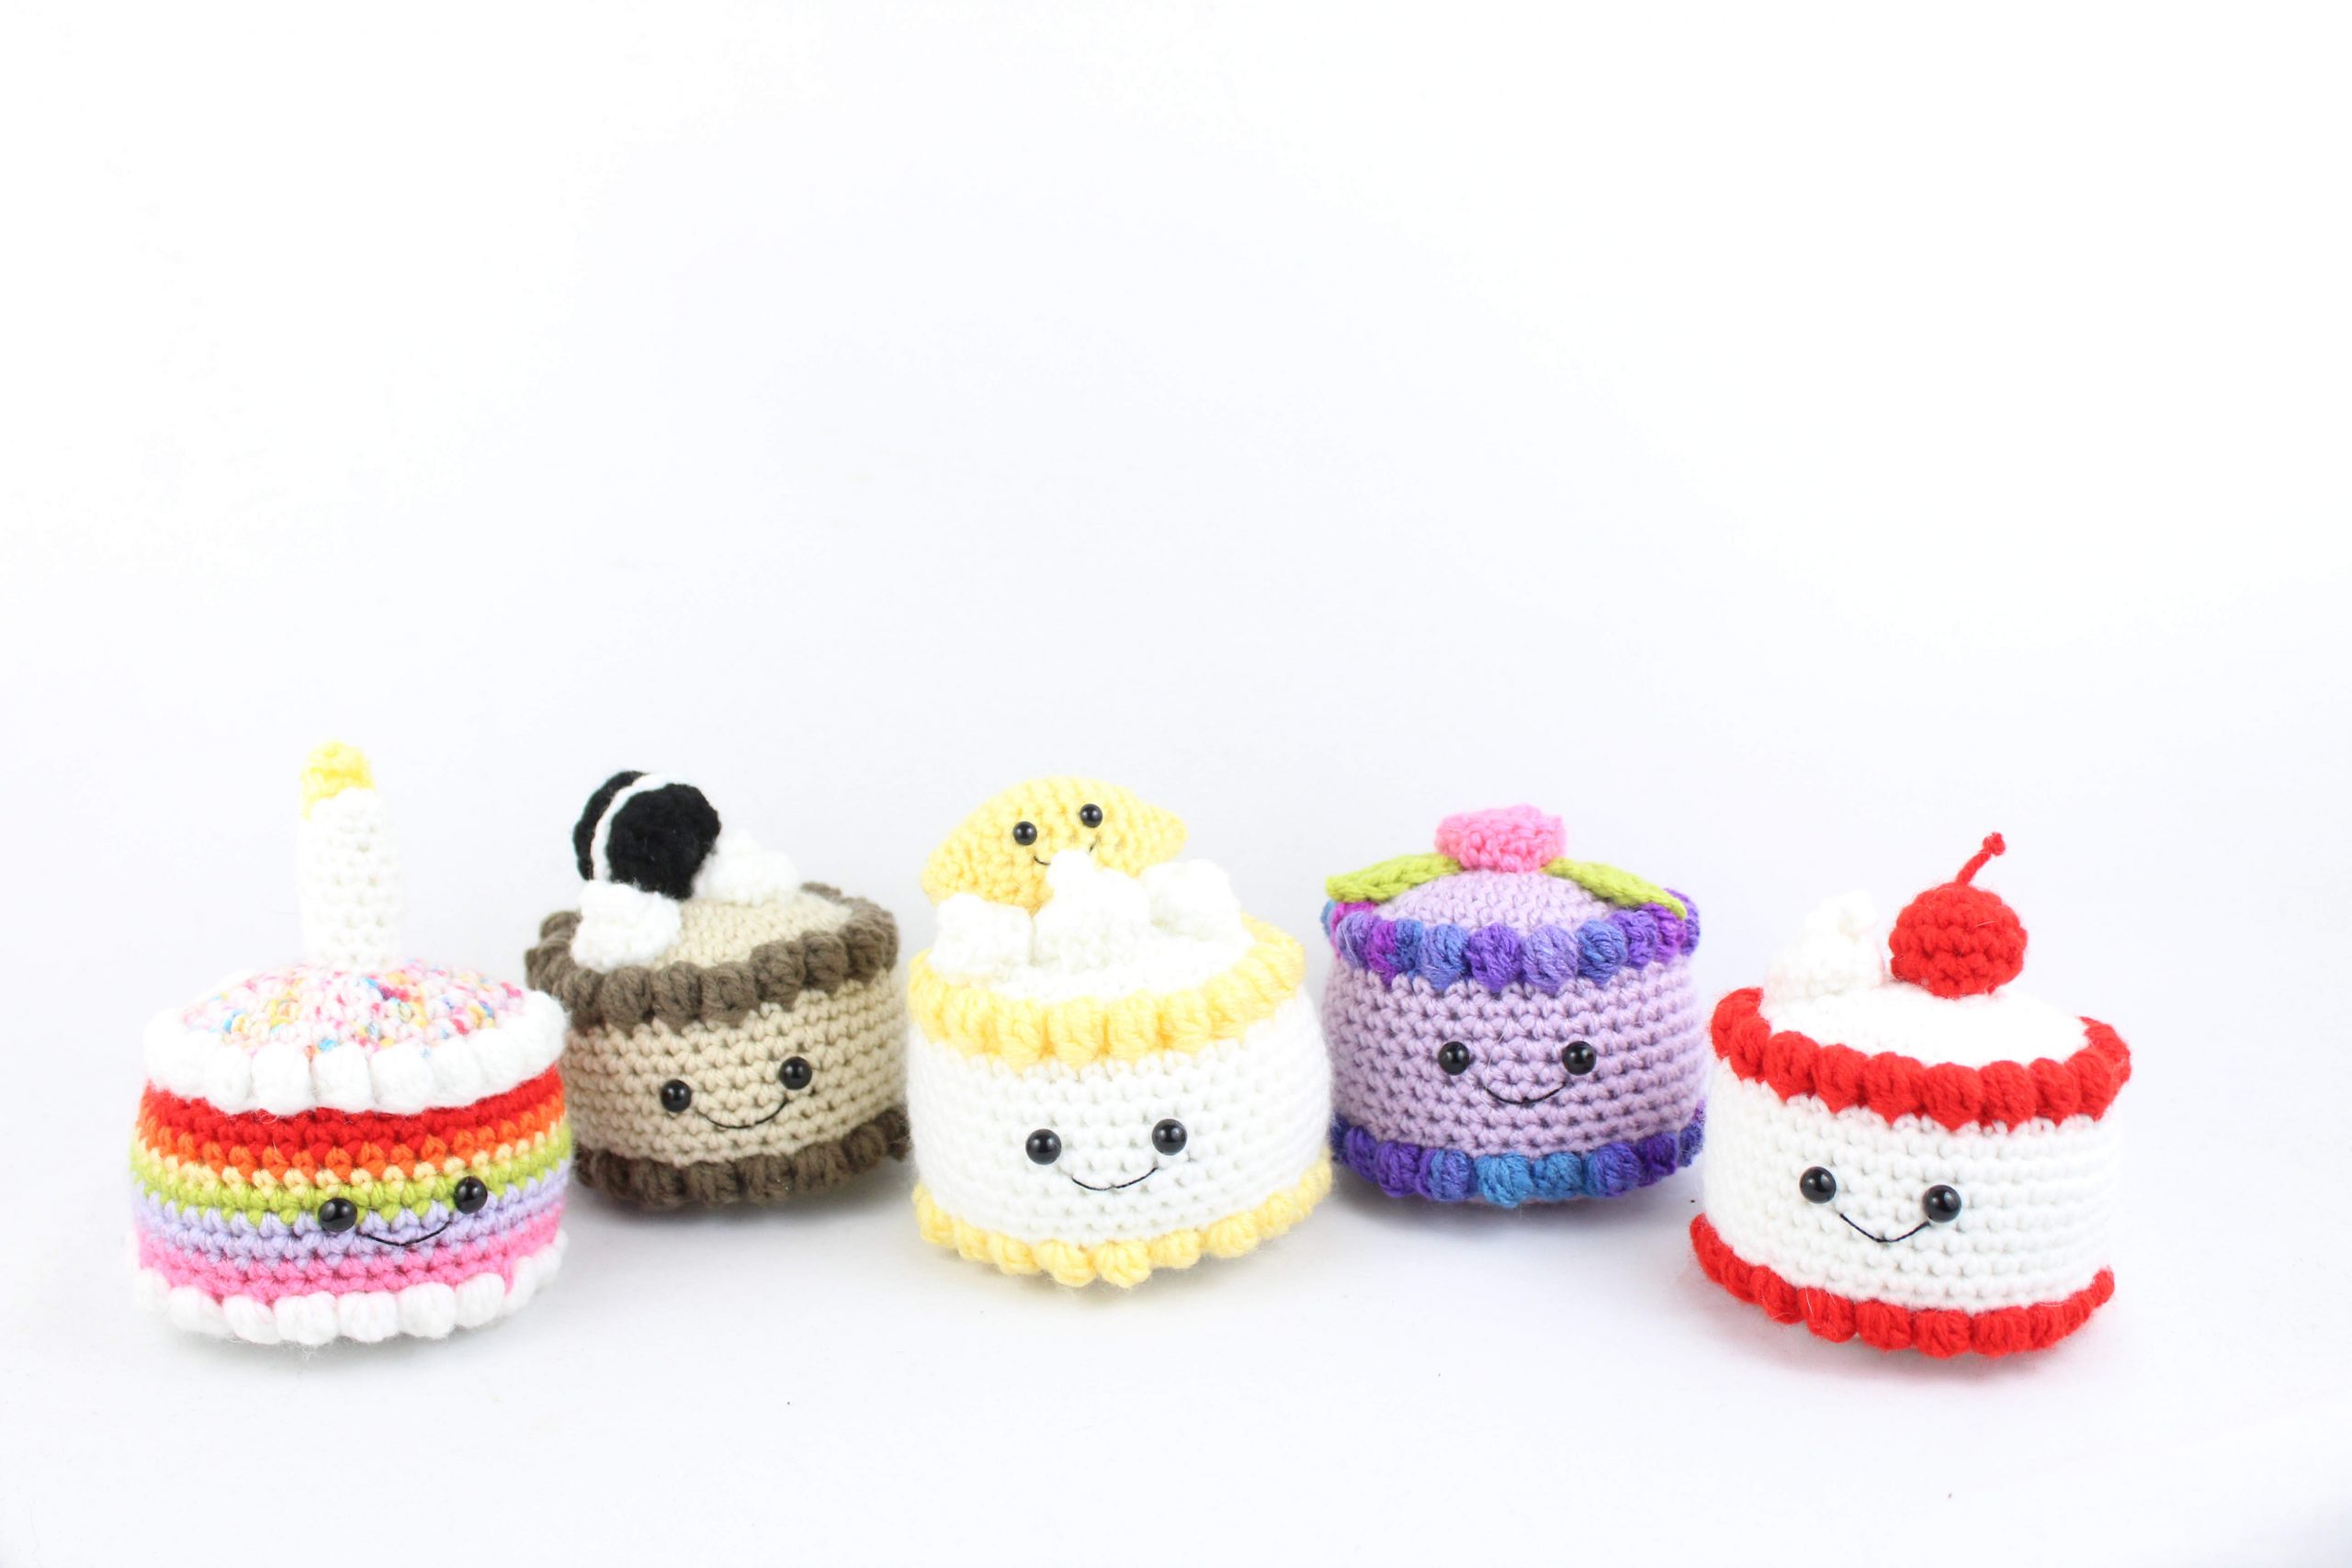 Crochet a Mini Rainbow Birthday Cake | KnitHacker